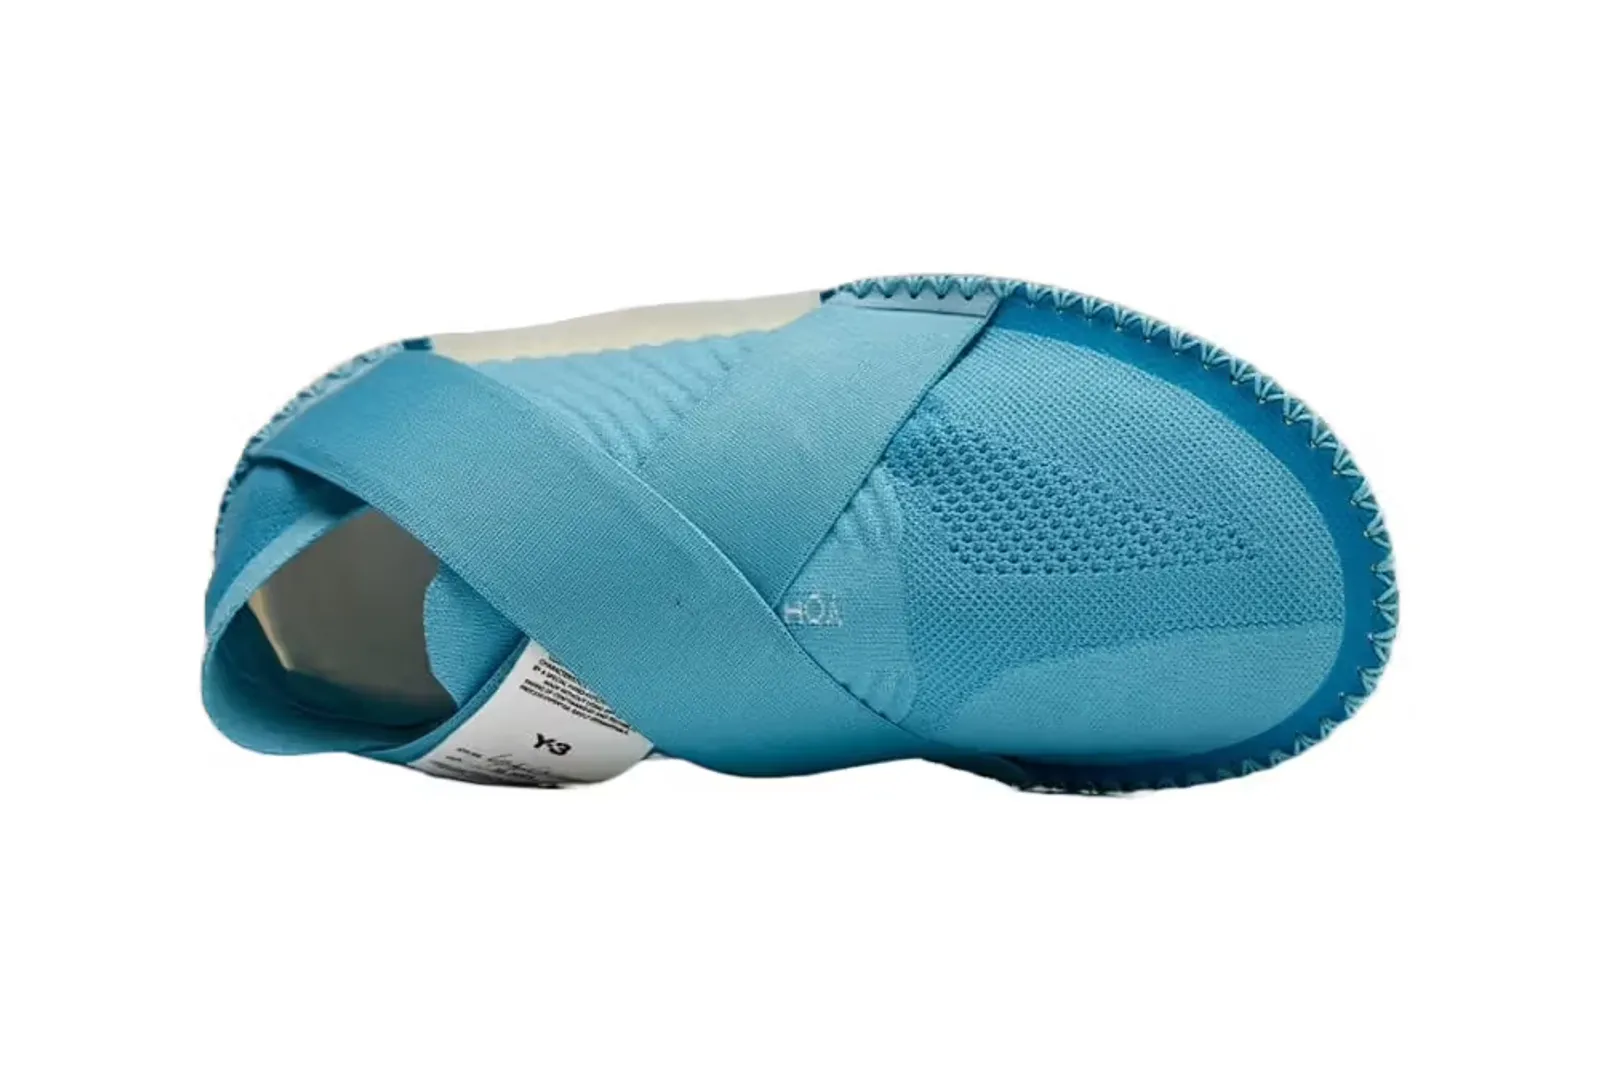 Warna Baru untuk adidas Y-3 ITOGO ‘Vapor Blue’